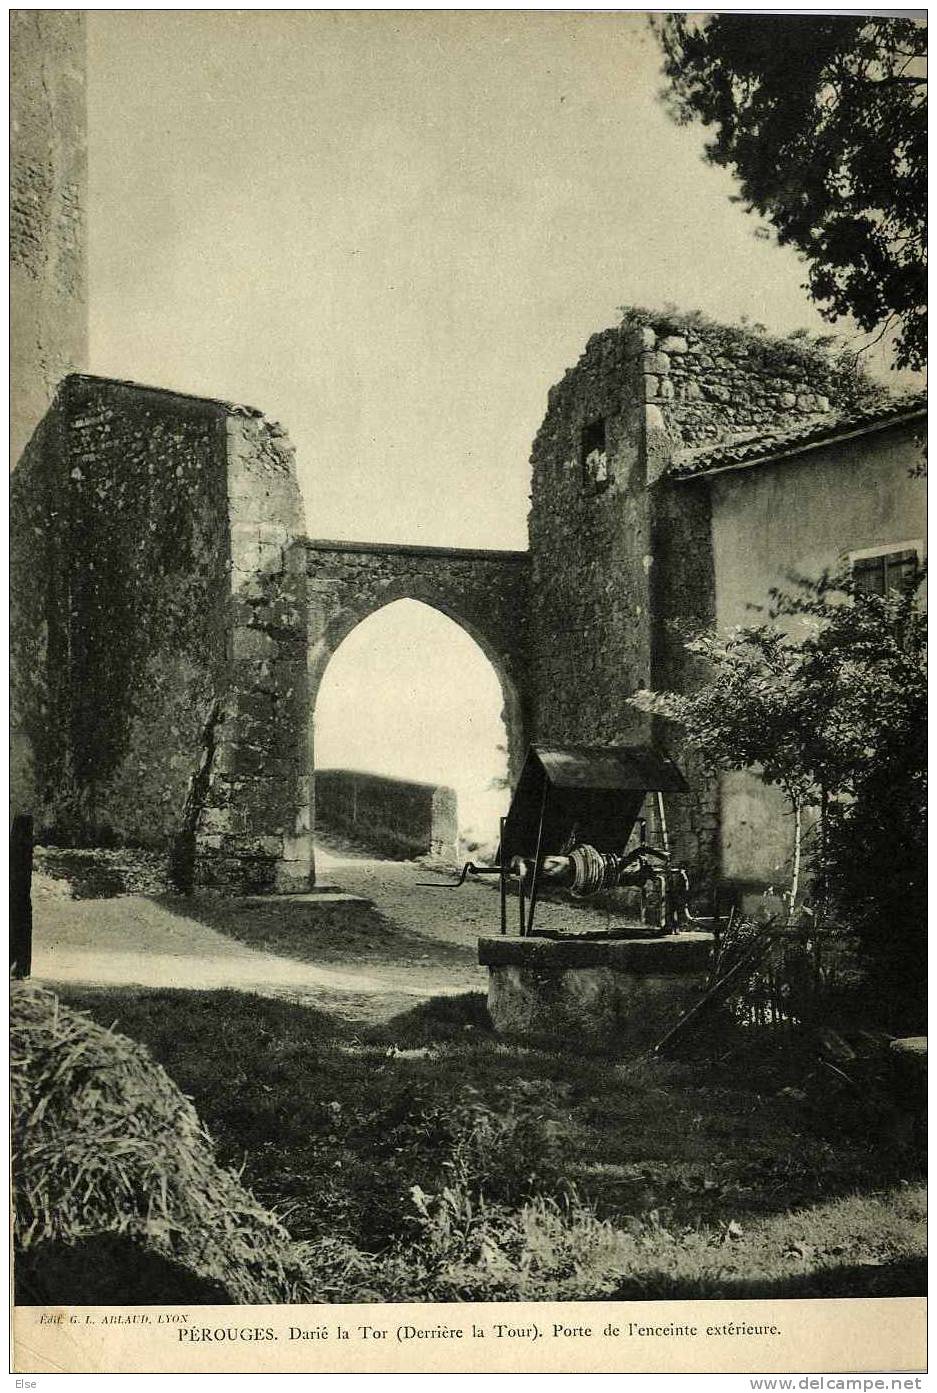 01 PEROUGES  -  CIELS ET SOURIRES DE FRANCES 1934  -  10 PAGES - Rhône-Alpes